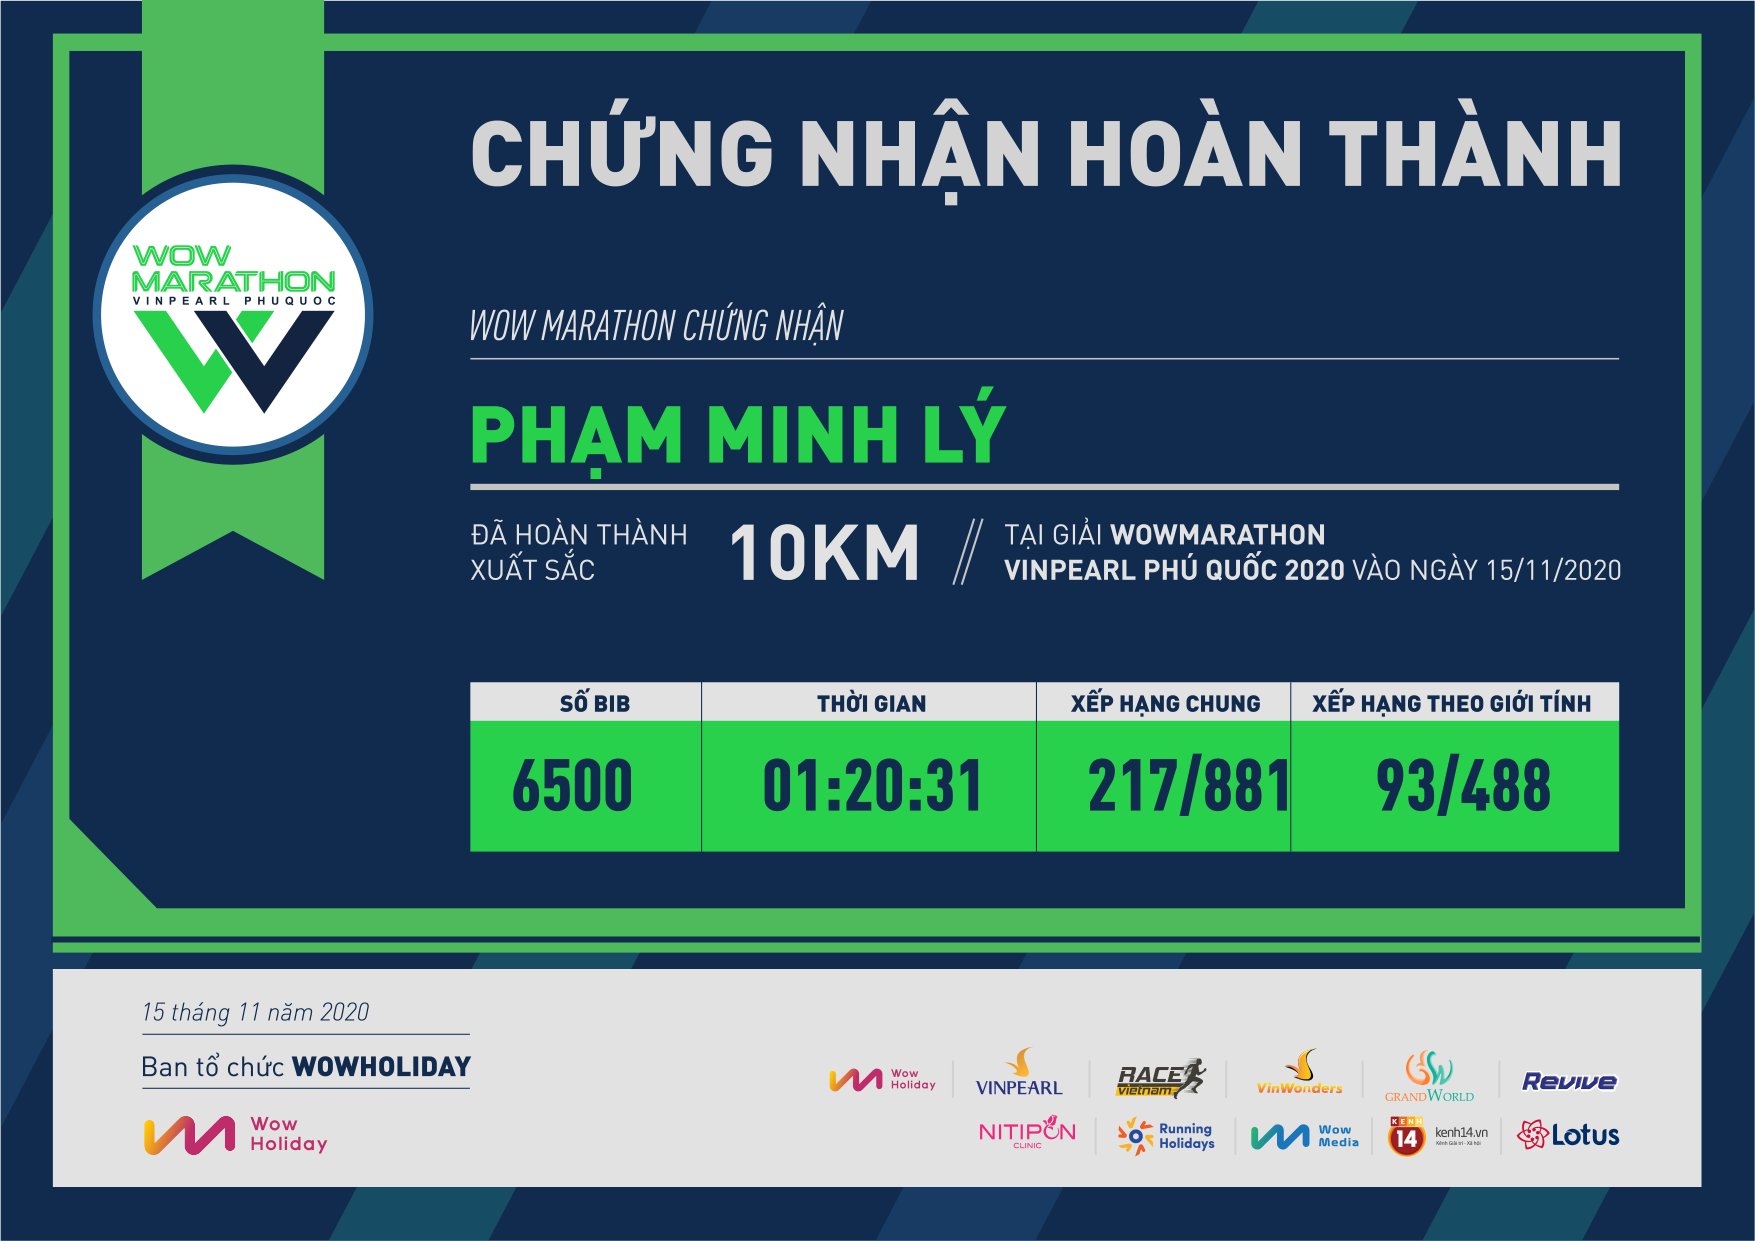 6500 - Phạm Minh Lý